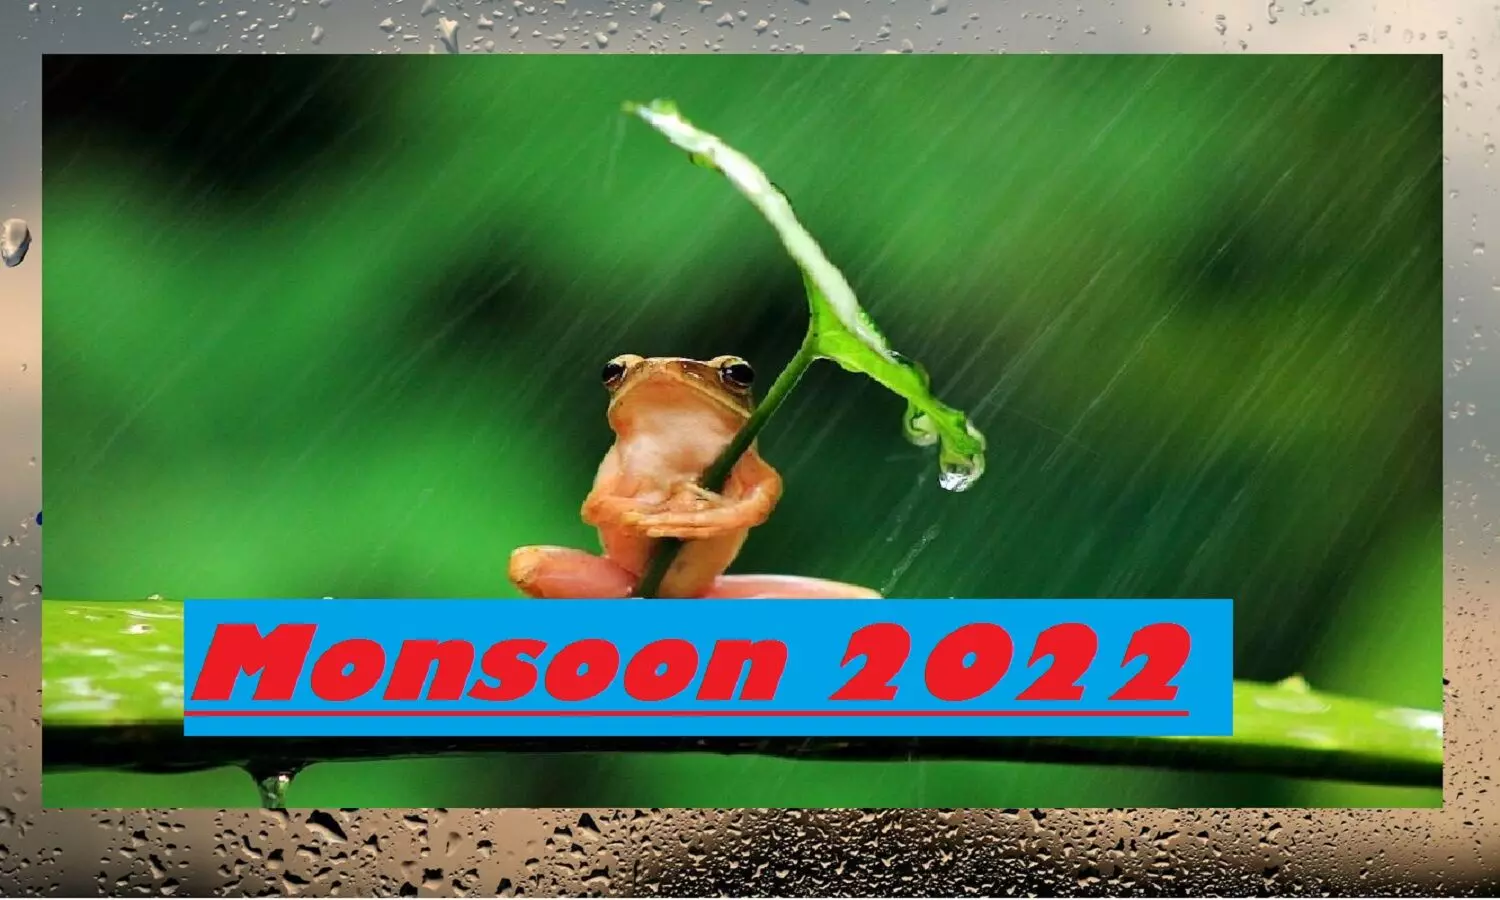 मानसून 2022 कब आएगा: इस बार ताबड़तोड़ बारिश के साथ प्रवेश करेगा Monsoon, गर्मी से राहत मिलेगी